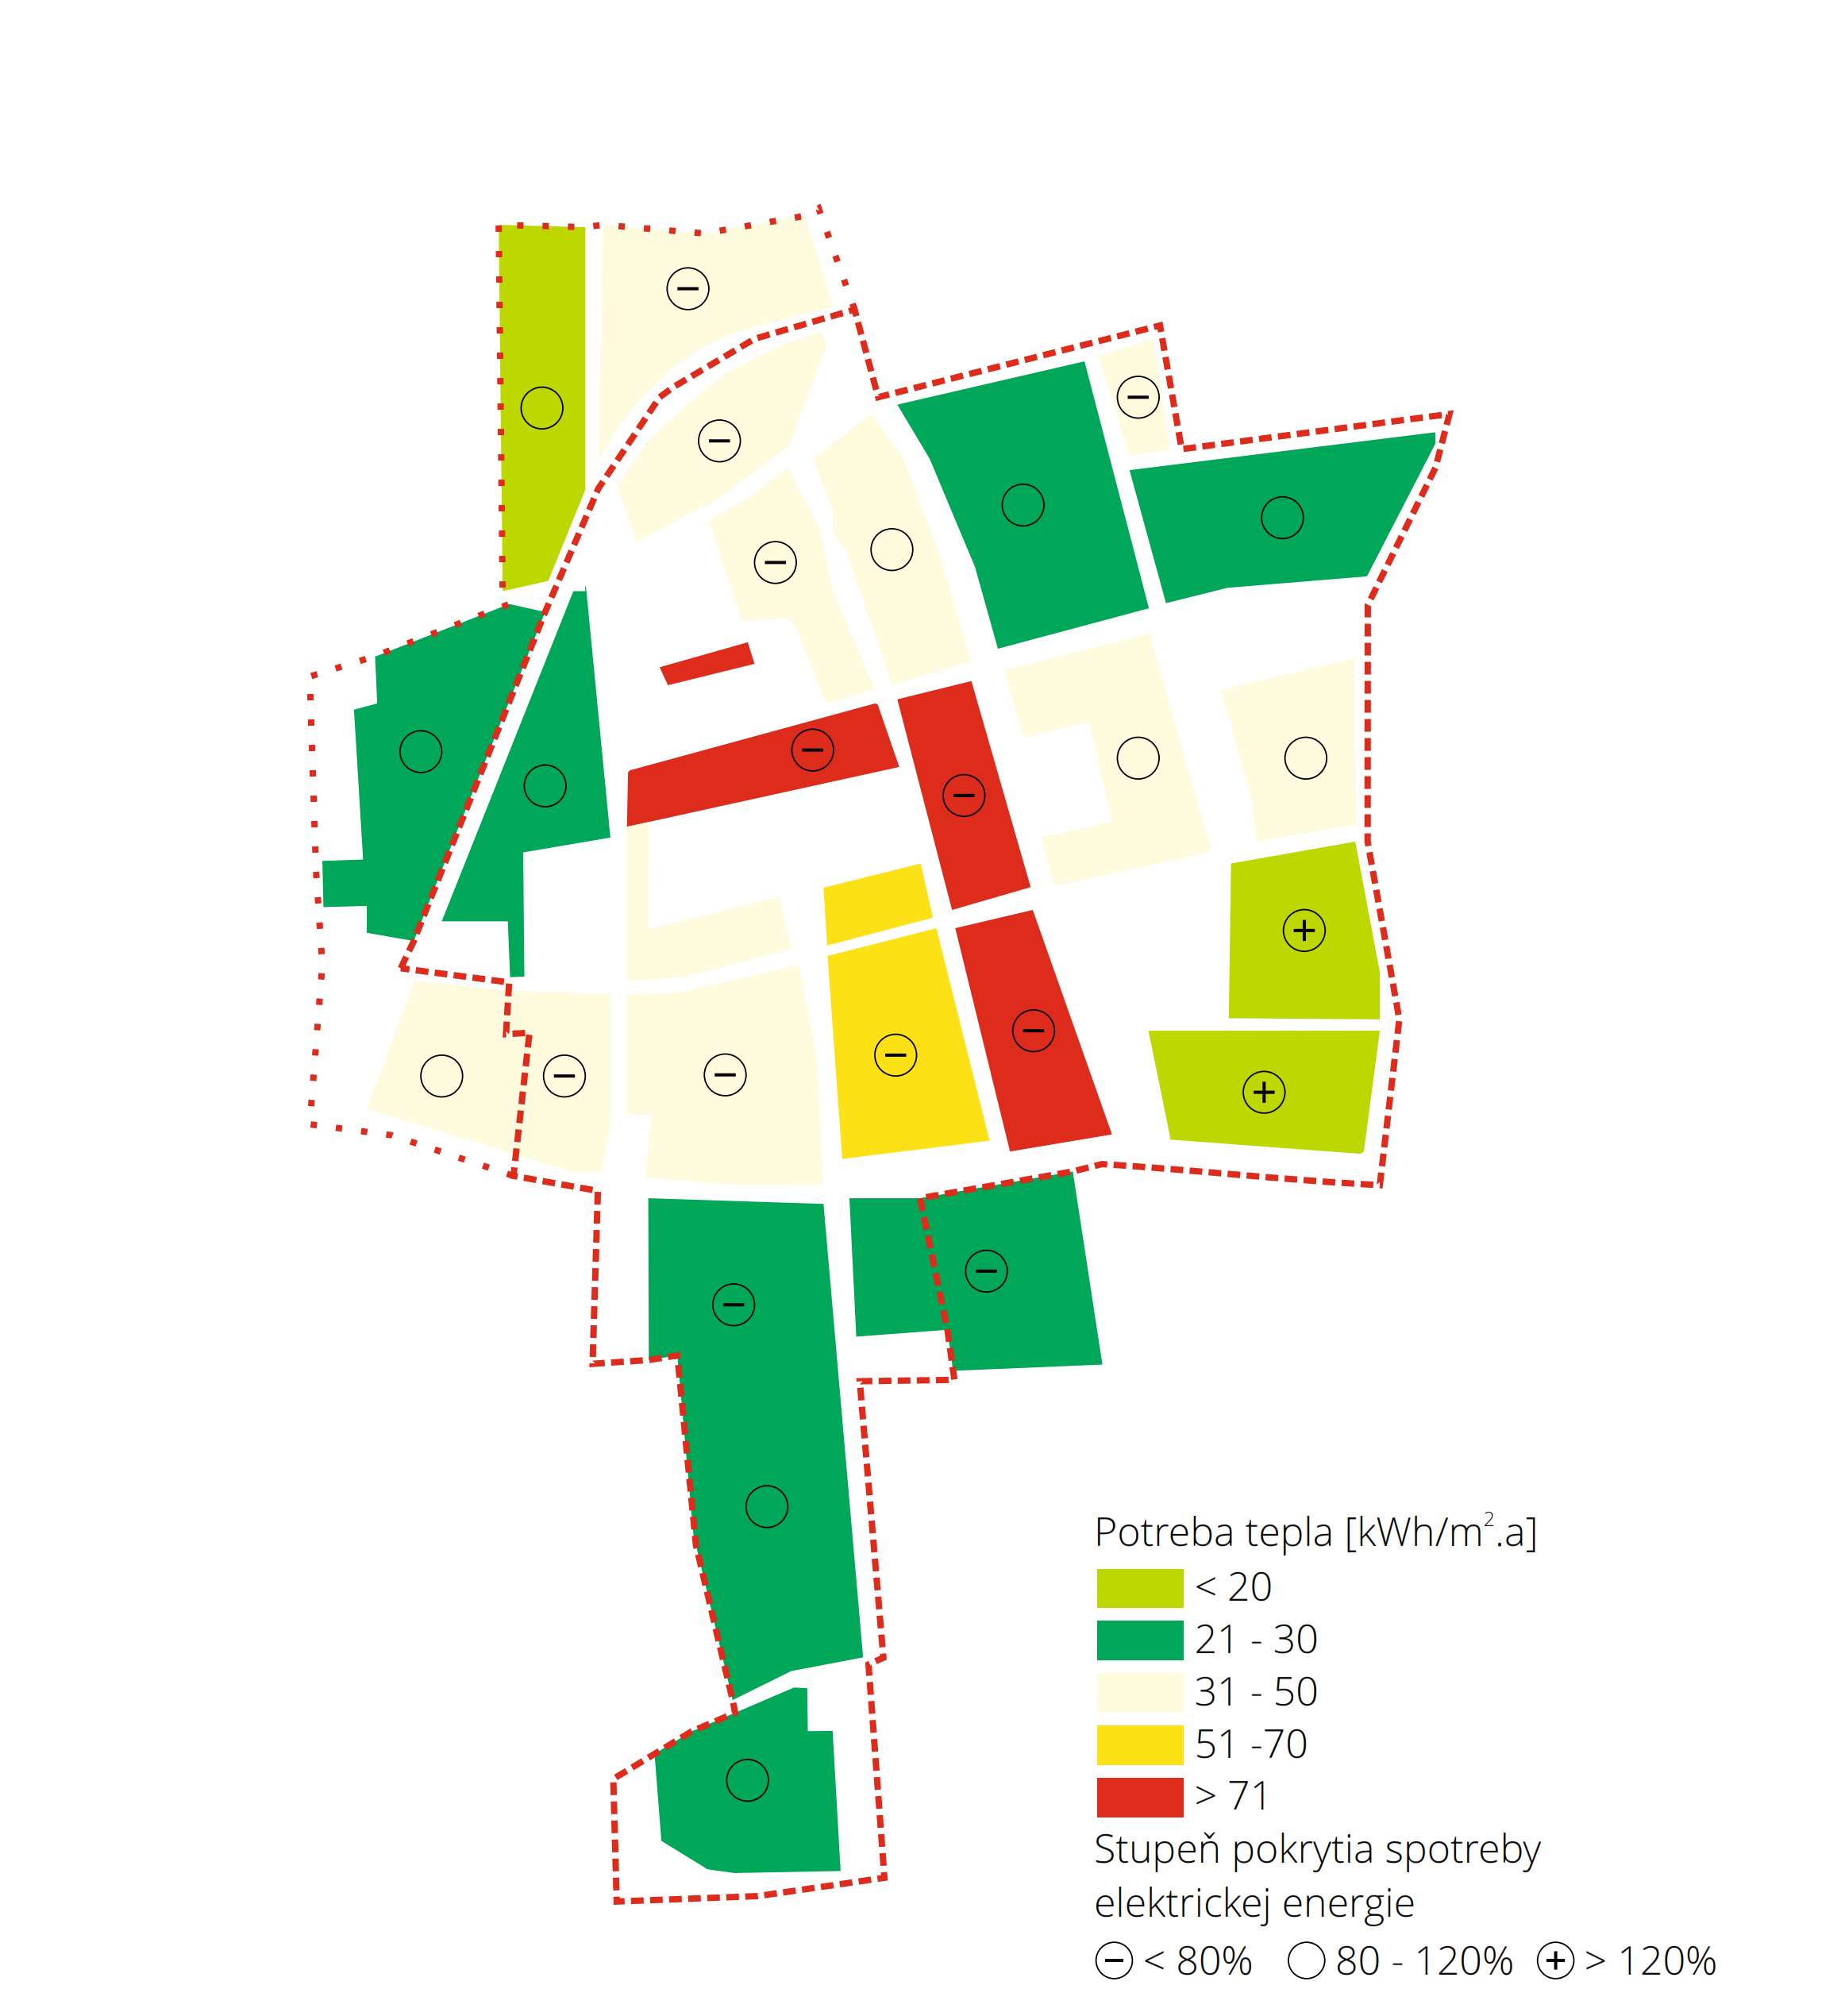 Energetický koncept mestskej štvrte Graz Reininghaus - Hustota potreby tepla (Wärmebedarfsdichte) na vykurovanie a potenciálny stupeň pokrytia vlastných potrieb prostredníctvom PV na úrovni mestskej štvrte.